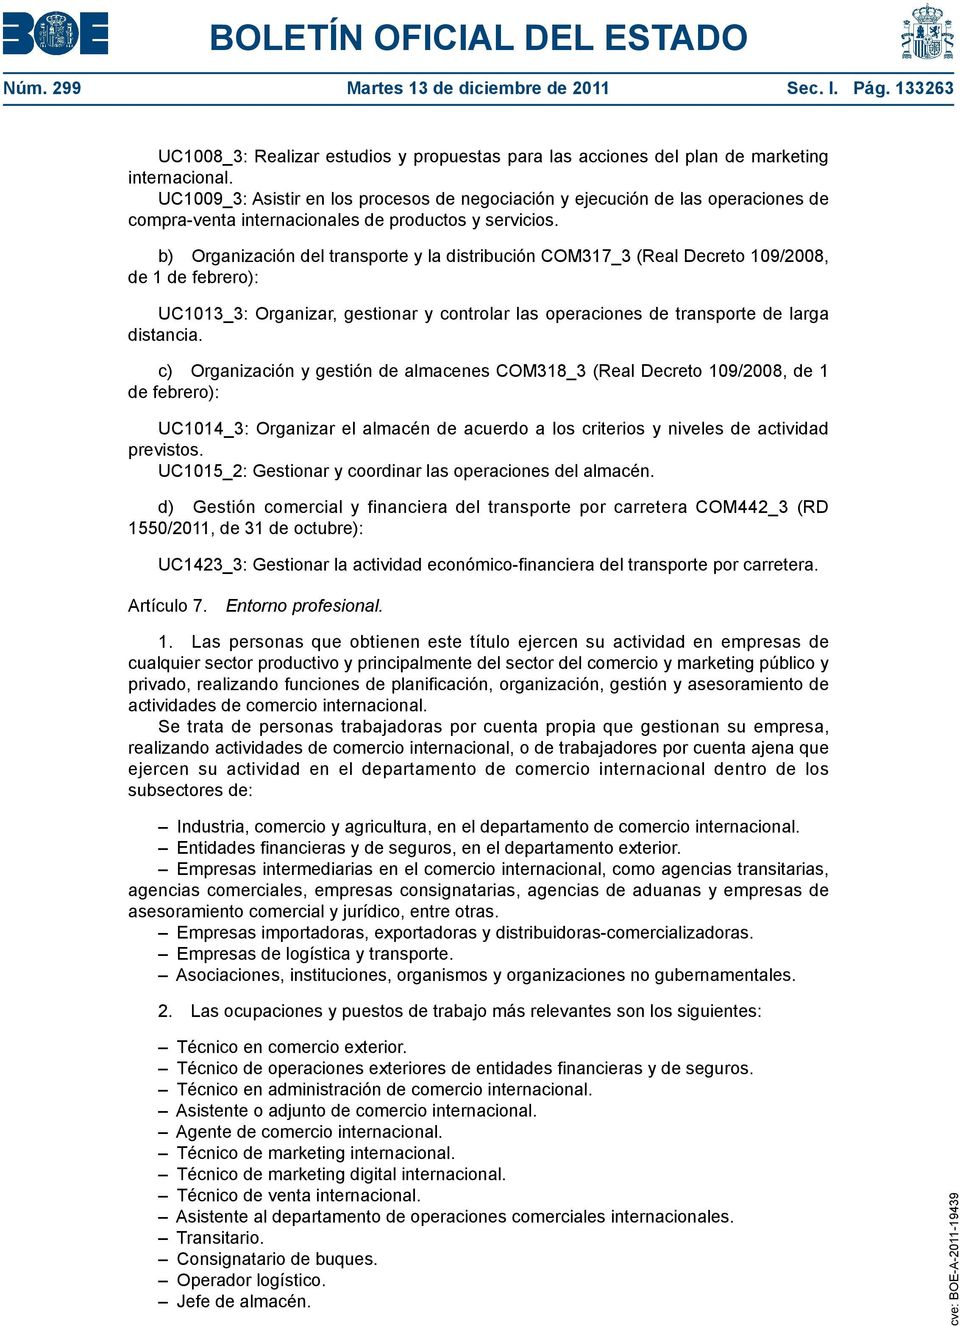 b) Organización del transporte y la distribución COM317_3 (Real Decreto 109/2008, de 1 de febrero): UC1013_3: Organizar, gestionar y controlar las operaciones de transporte de larga distancia.